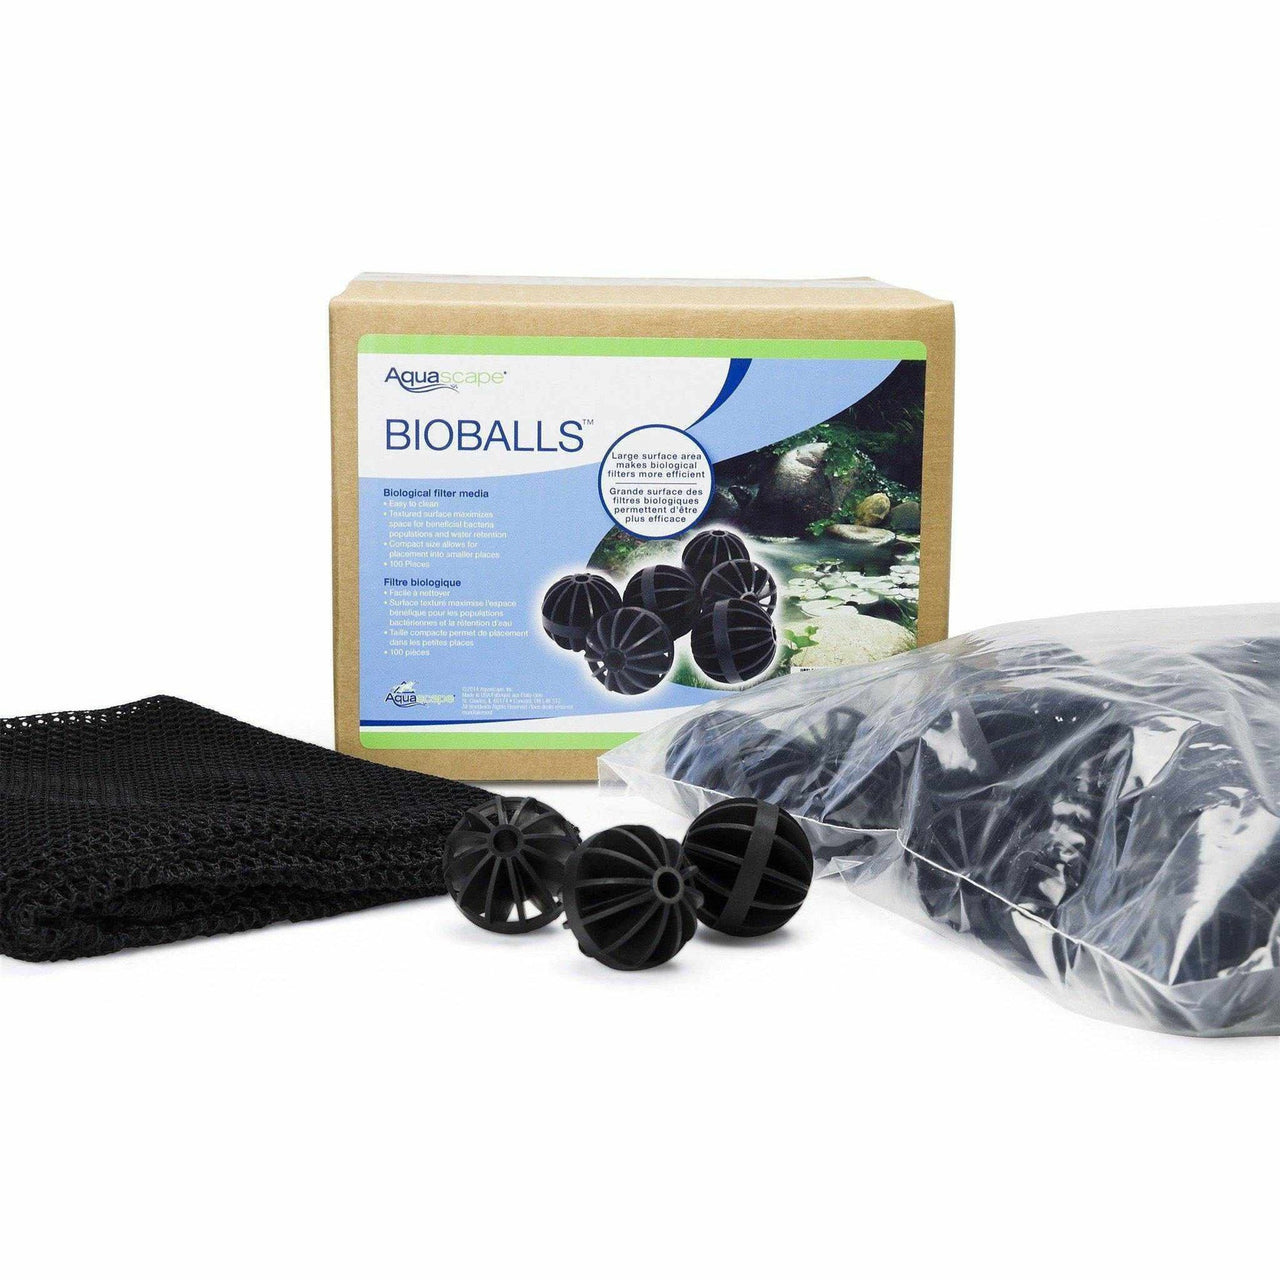 Aquascape BioBalls